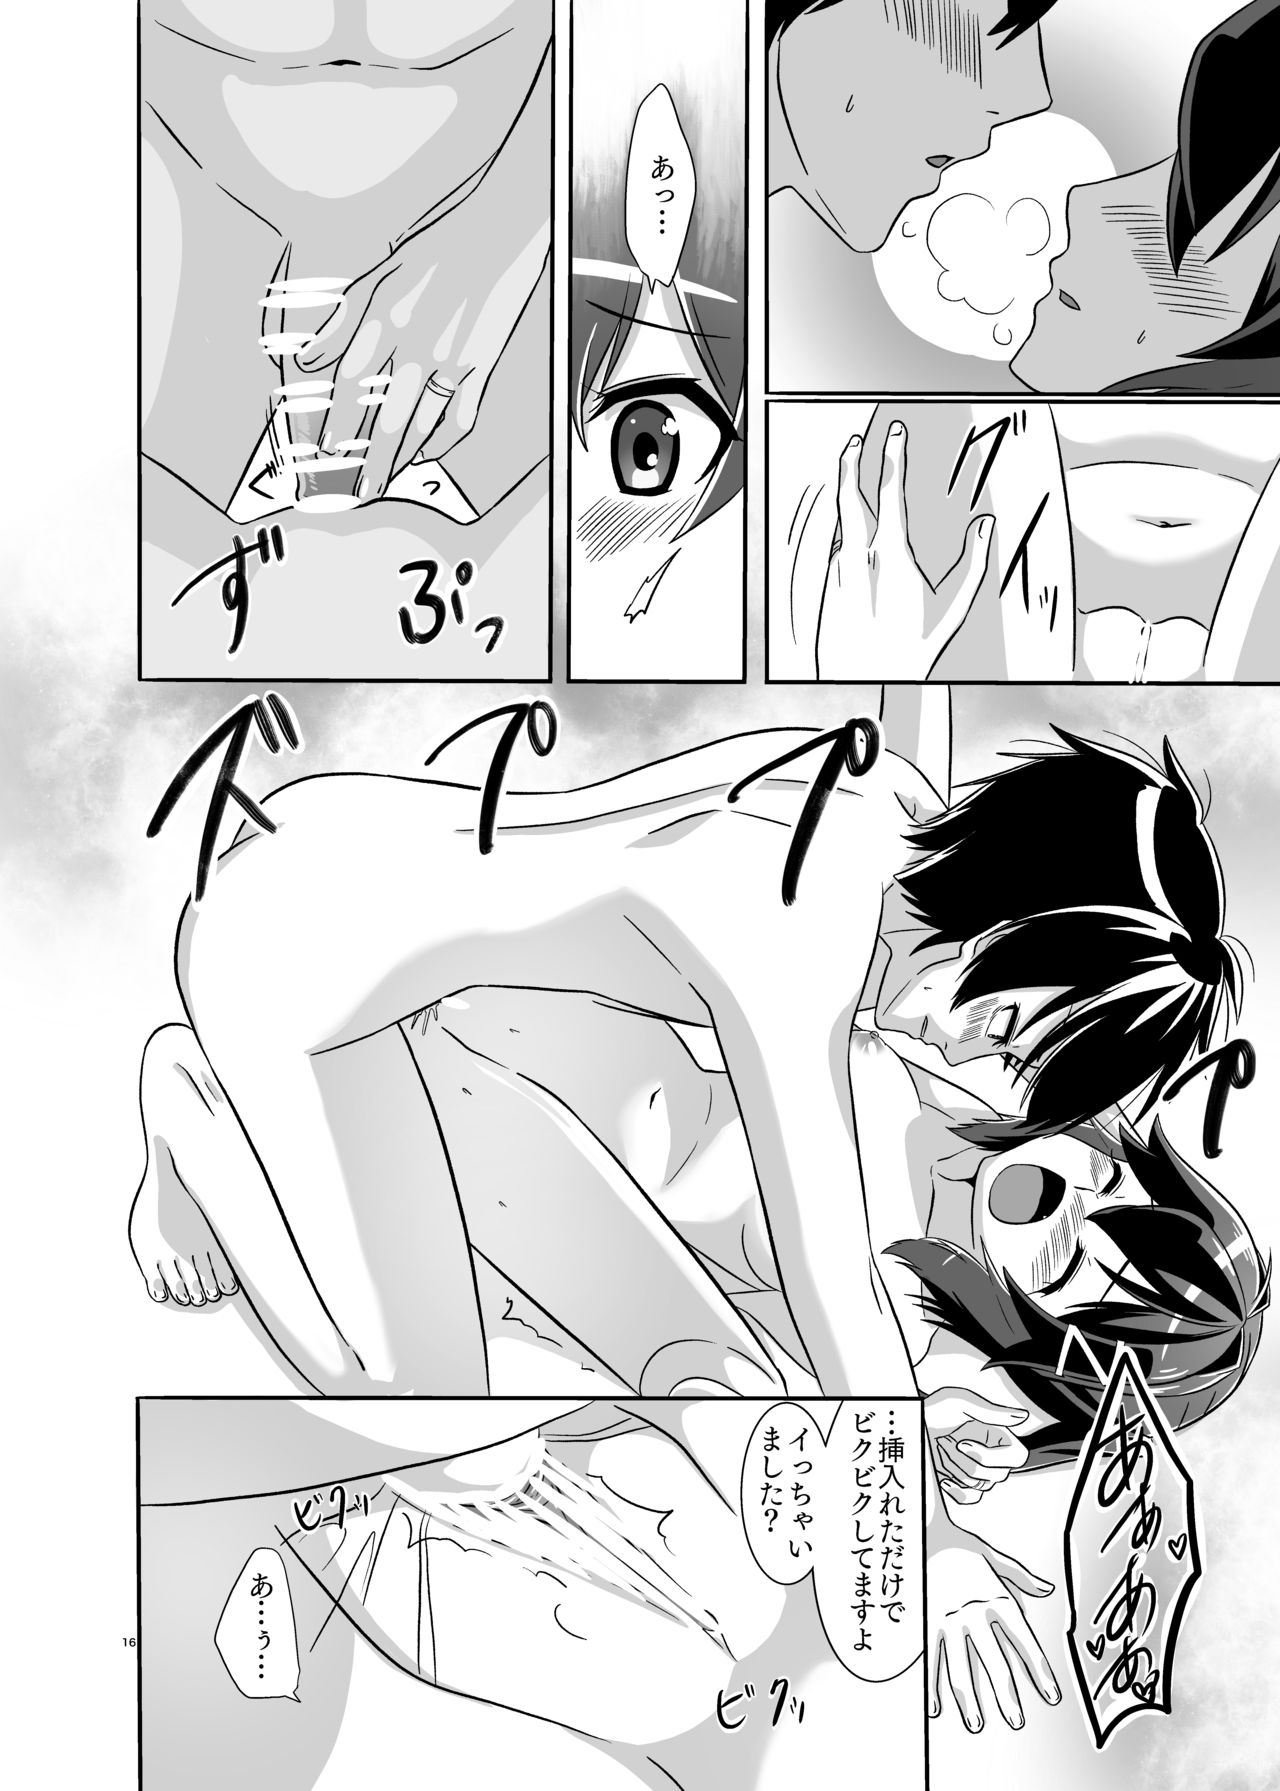 [Torutī-ya] Itsumo no yoru futari no yotogi⑴ (Warship Girls R) page 17 full